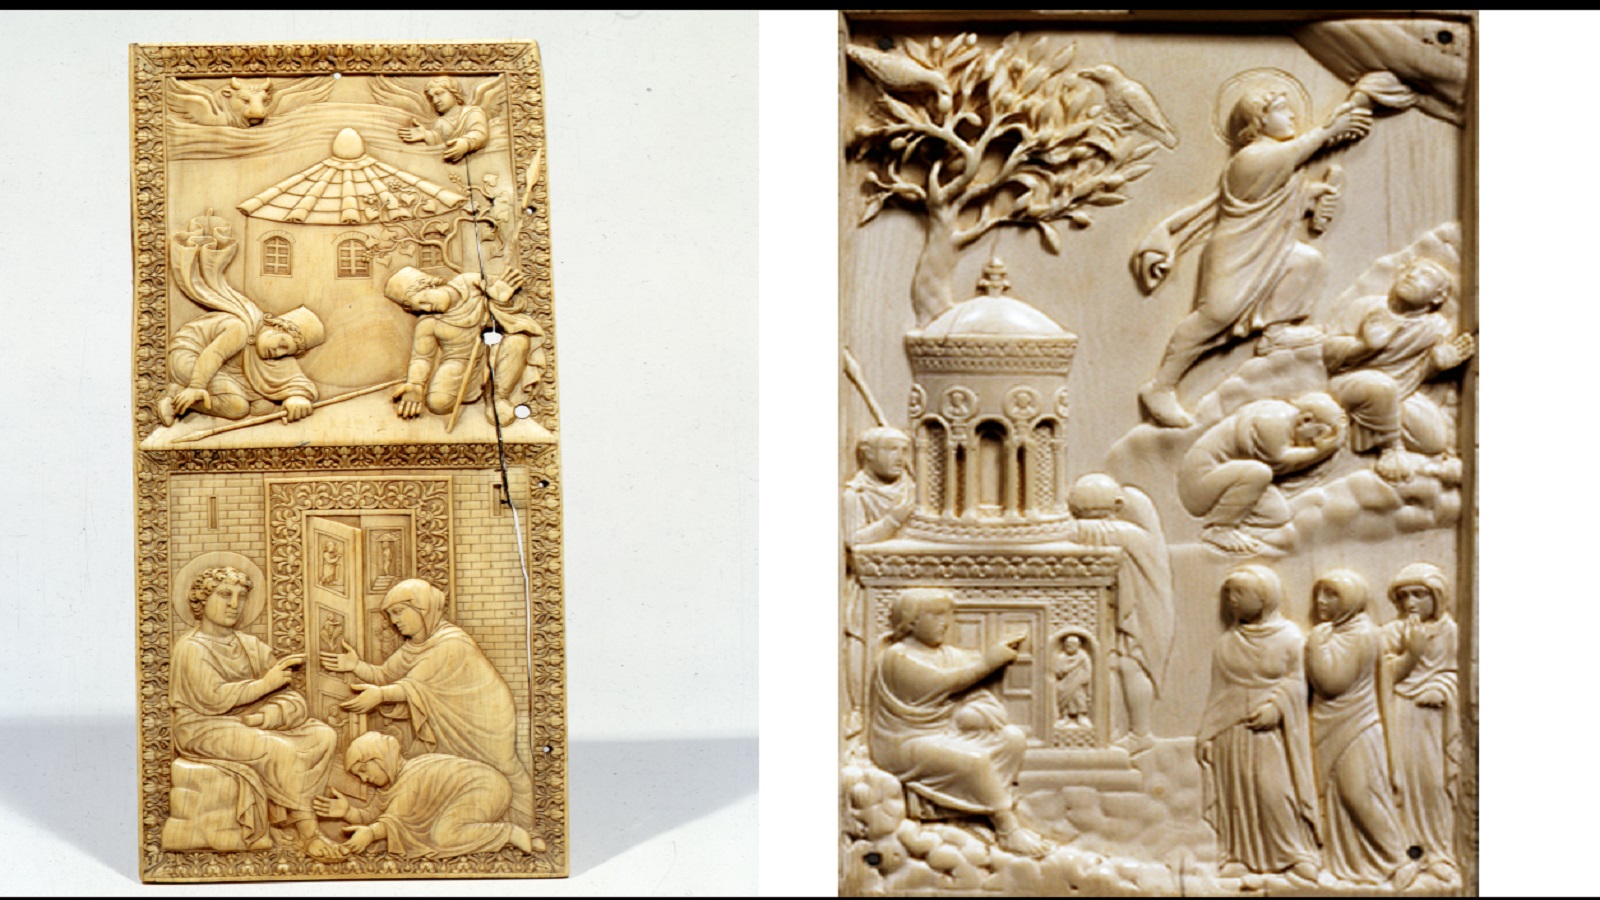 القيامة في قطعتين من العاج تعودان.. القرن الخامس. الأولى محفوظة في متحف سفورزيسكو (ميلانو)، والثانية في المتحف البافاري ميونخ.